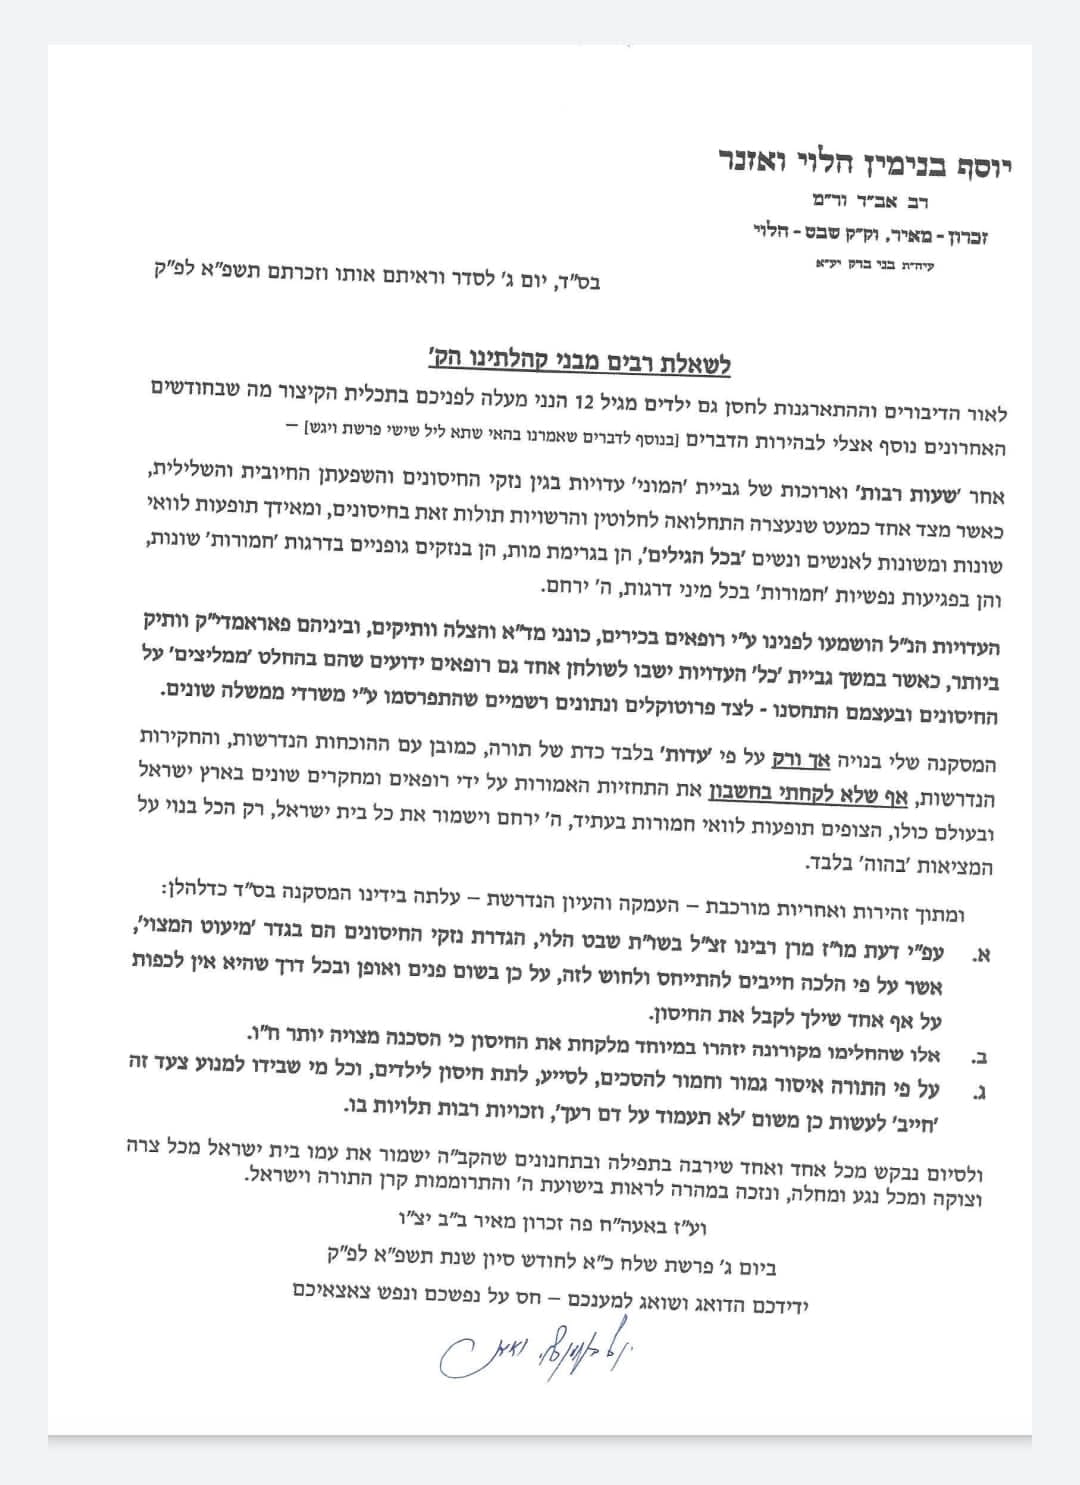 Letter from Rabbi Wosner against vaccine for children